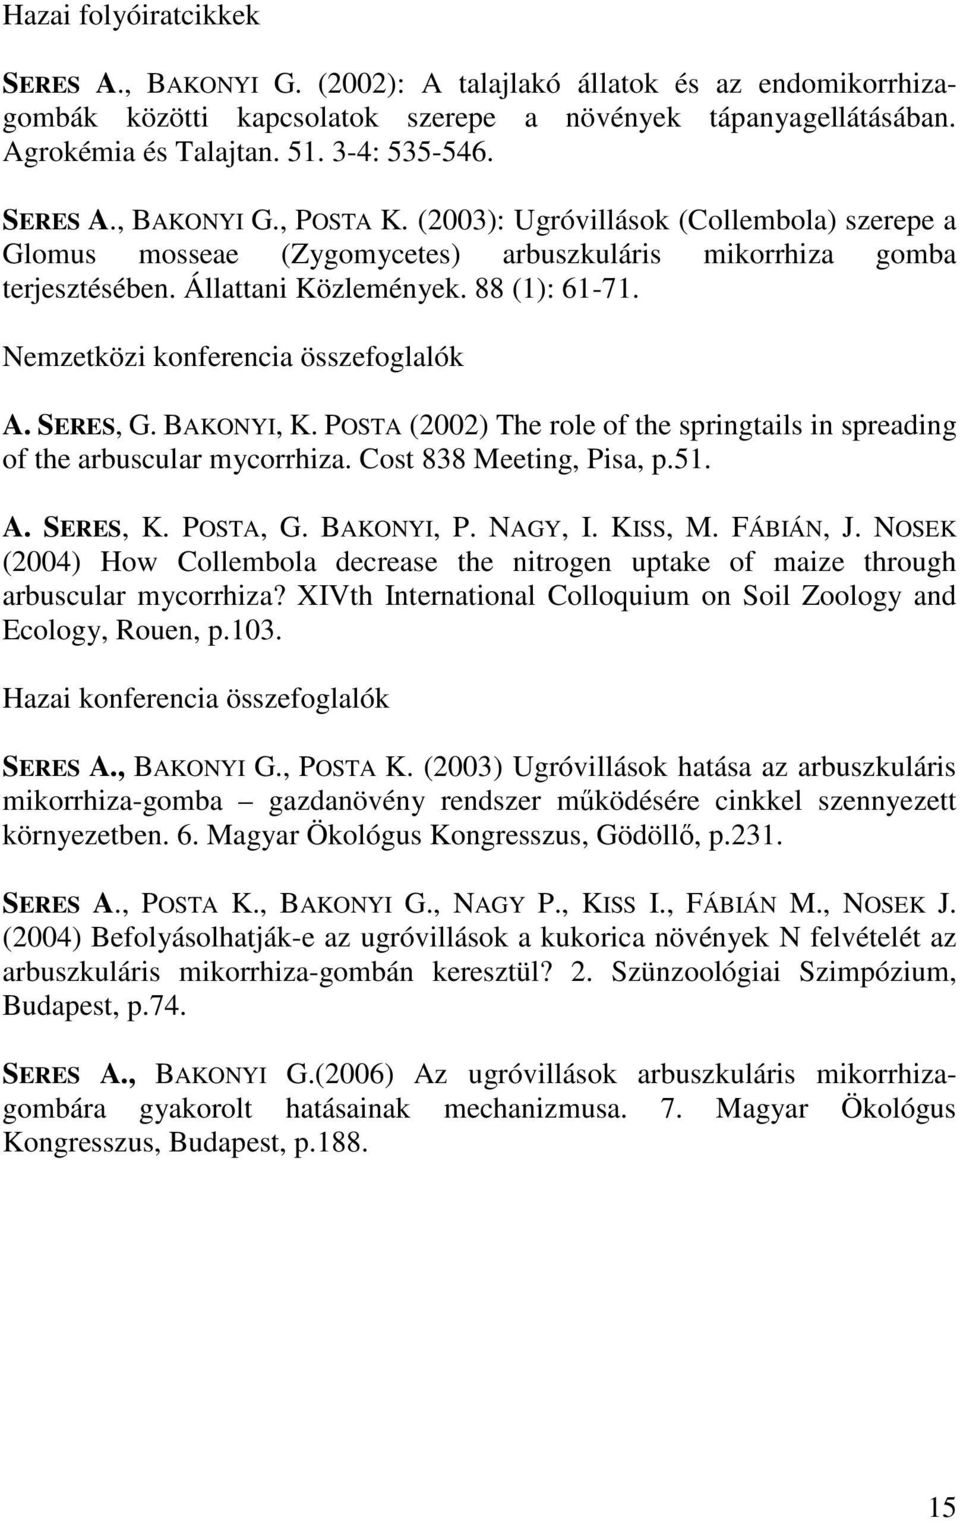 Nemzetközi konferencia összefoglalók A. SERES, G. BAKONYI, K. POSTA (2002) The role of the springtails in spreading of the arbuscular mycorrhiza. Cost 838 Meeting, Pisa, p.51. A. SERES, K. POSTA, G.